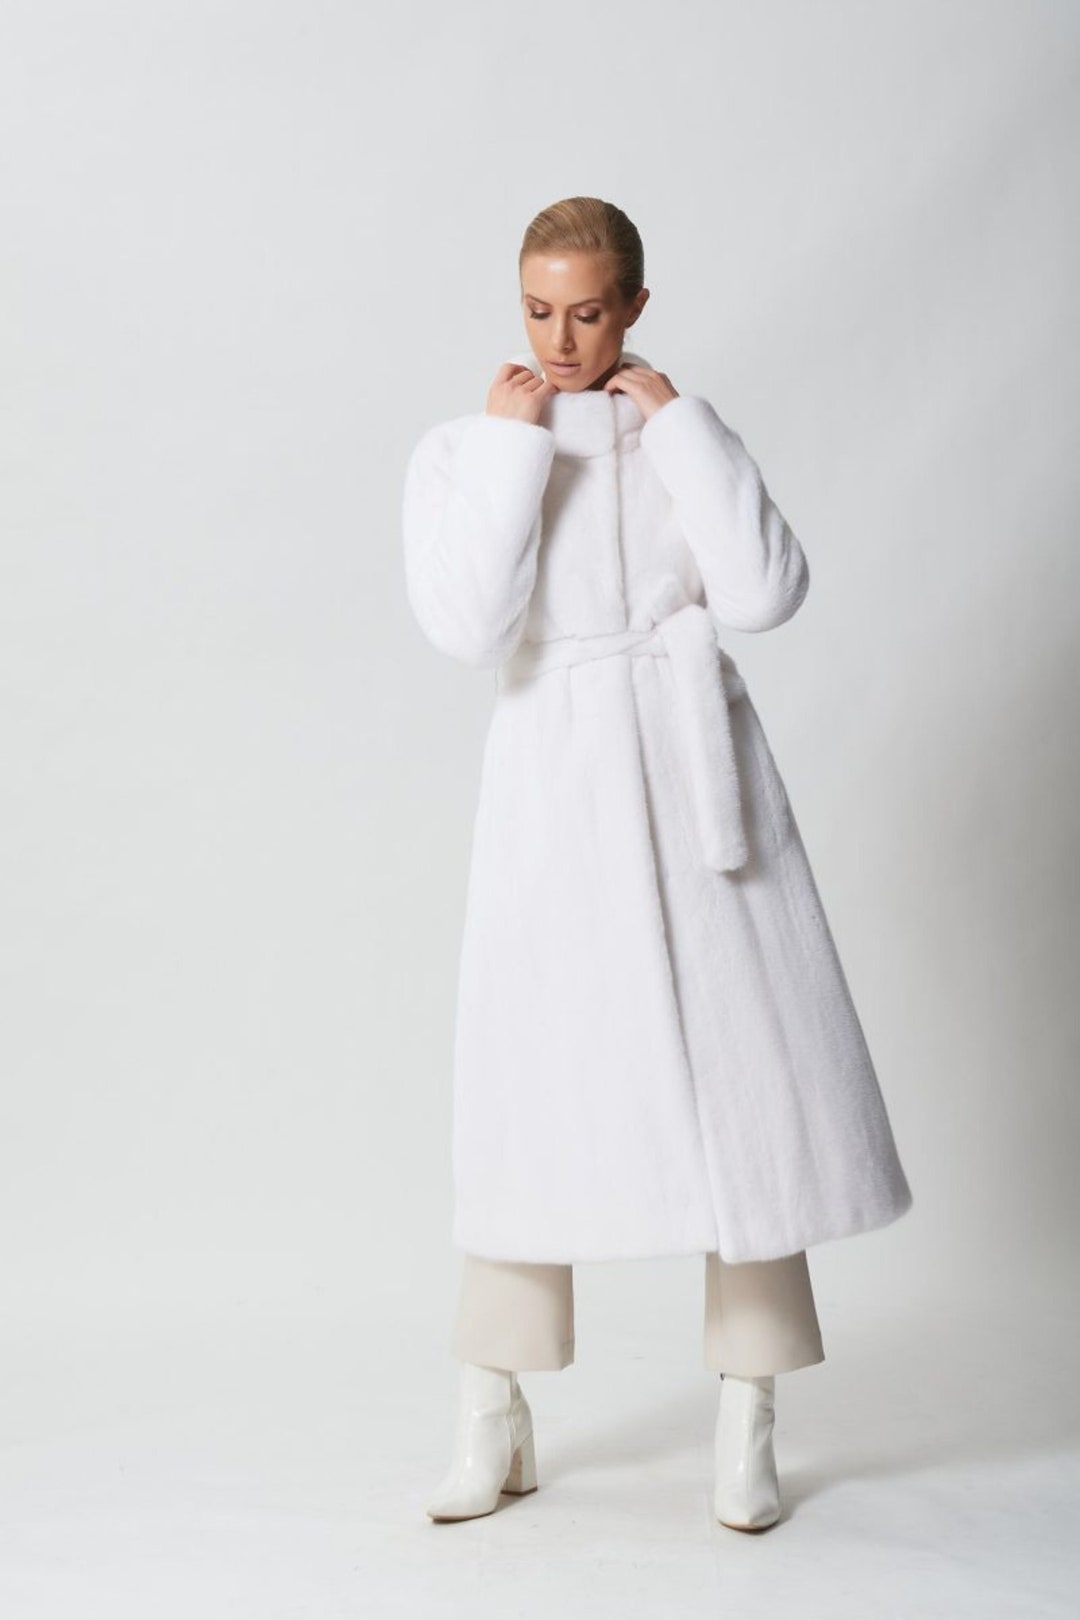 White Mink Fur Coat With Fur Belt Made of 100% Real Mink Fur - Etsy